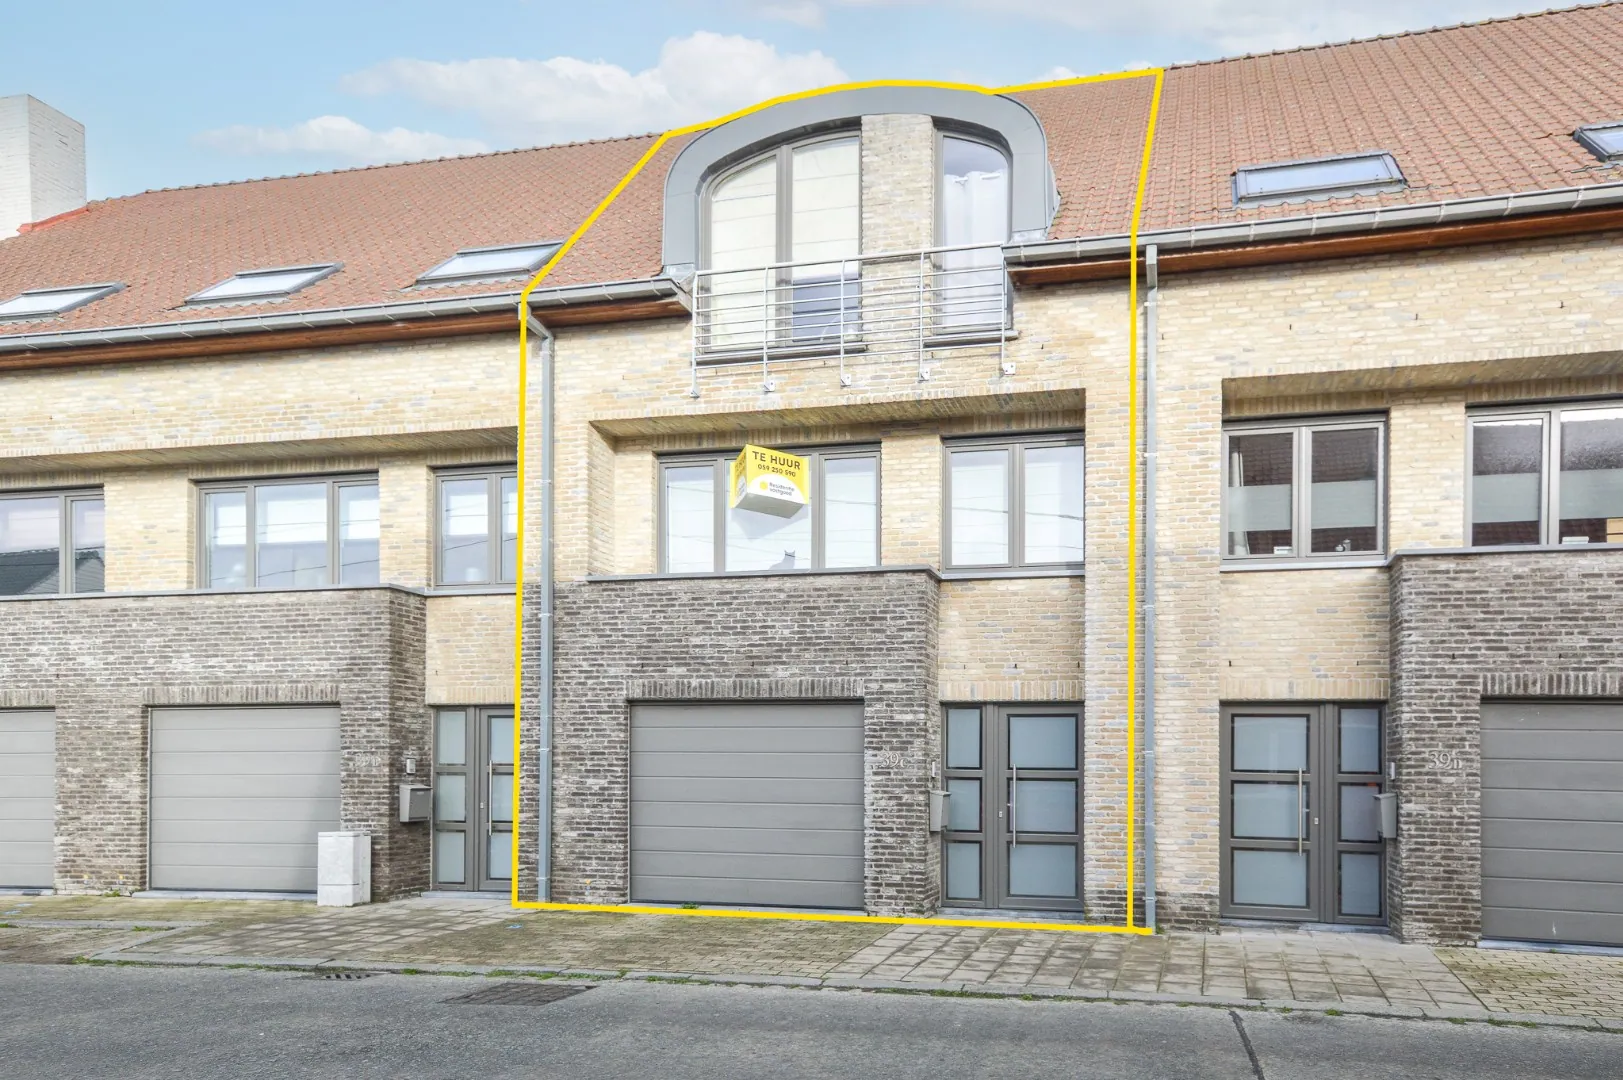 Recente Bel-etage woning met 3 slaapkamers en dubbele garage te huur te Ettelgem.